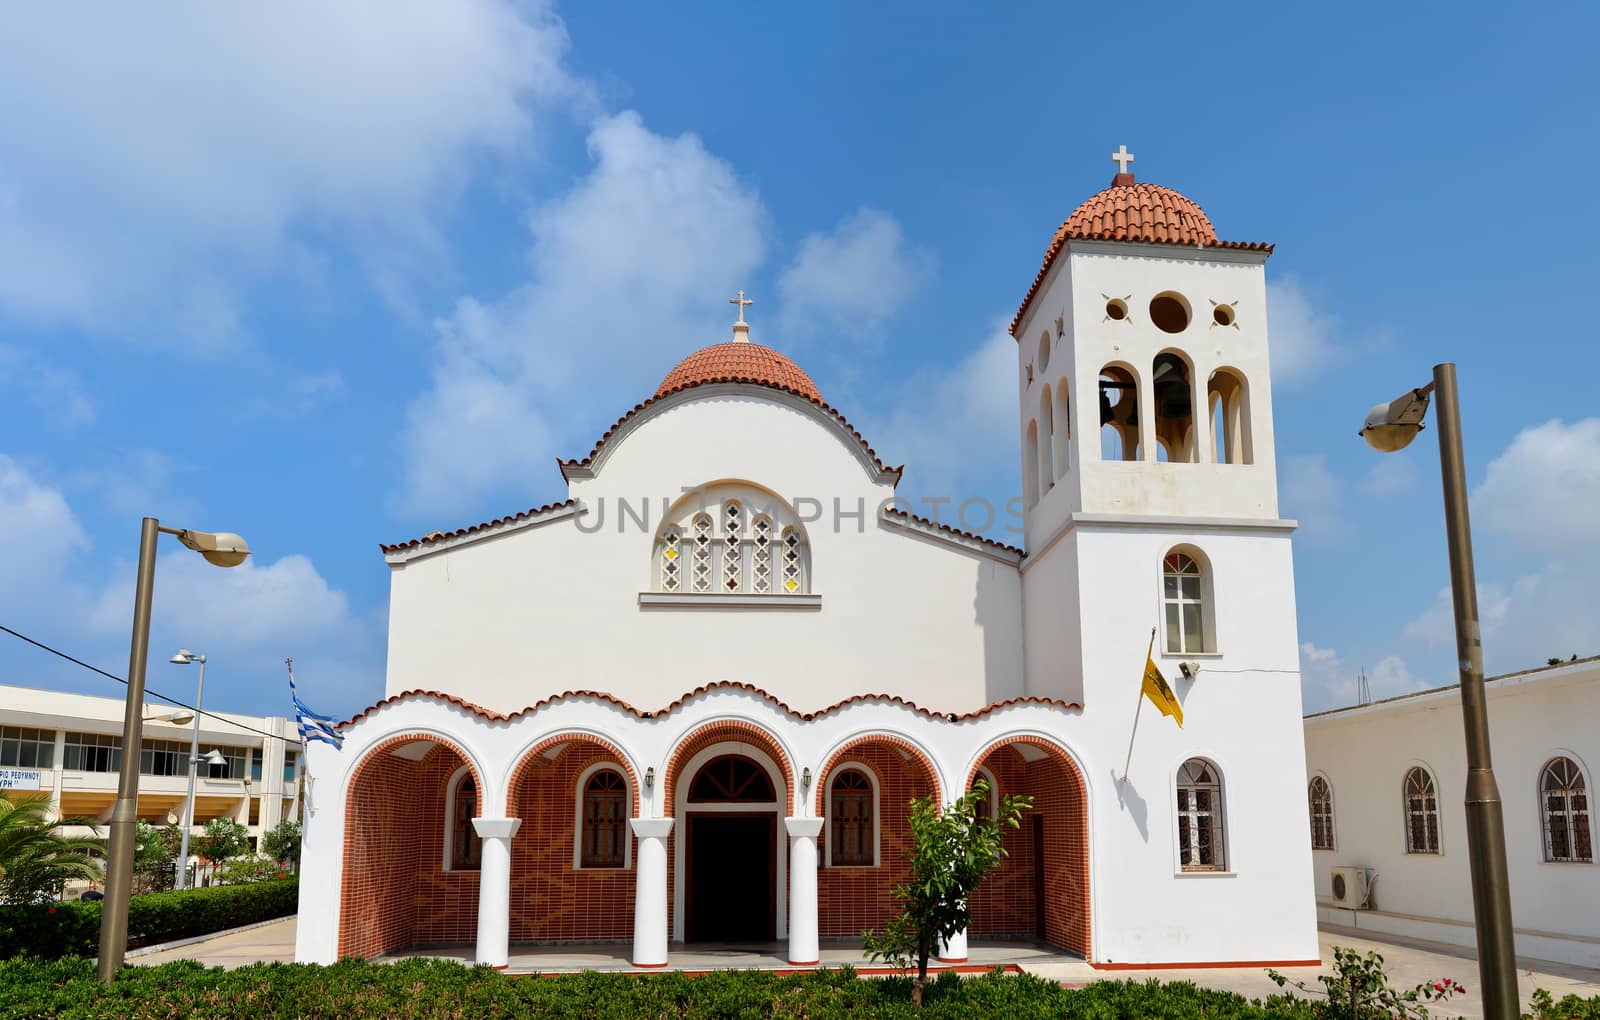 Rethymno Orthodox church by tony4urban